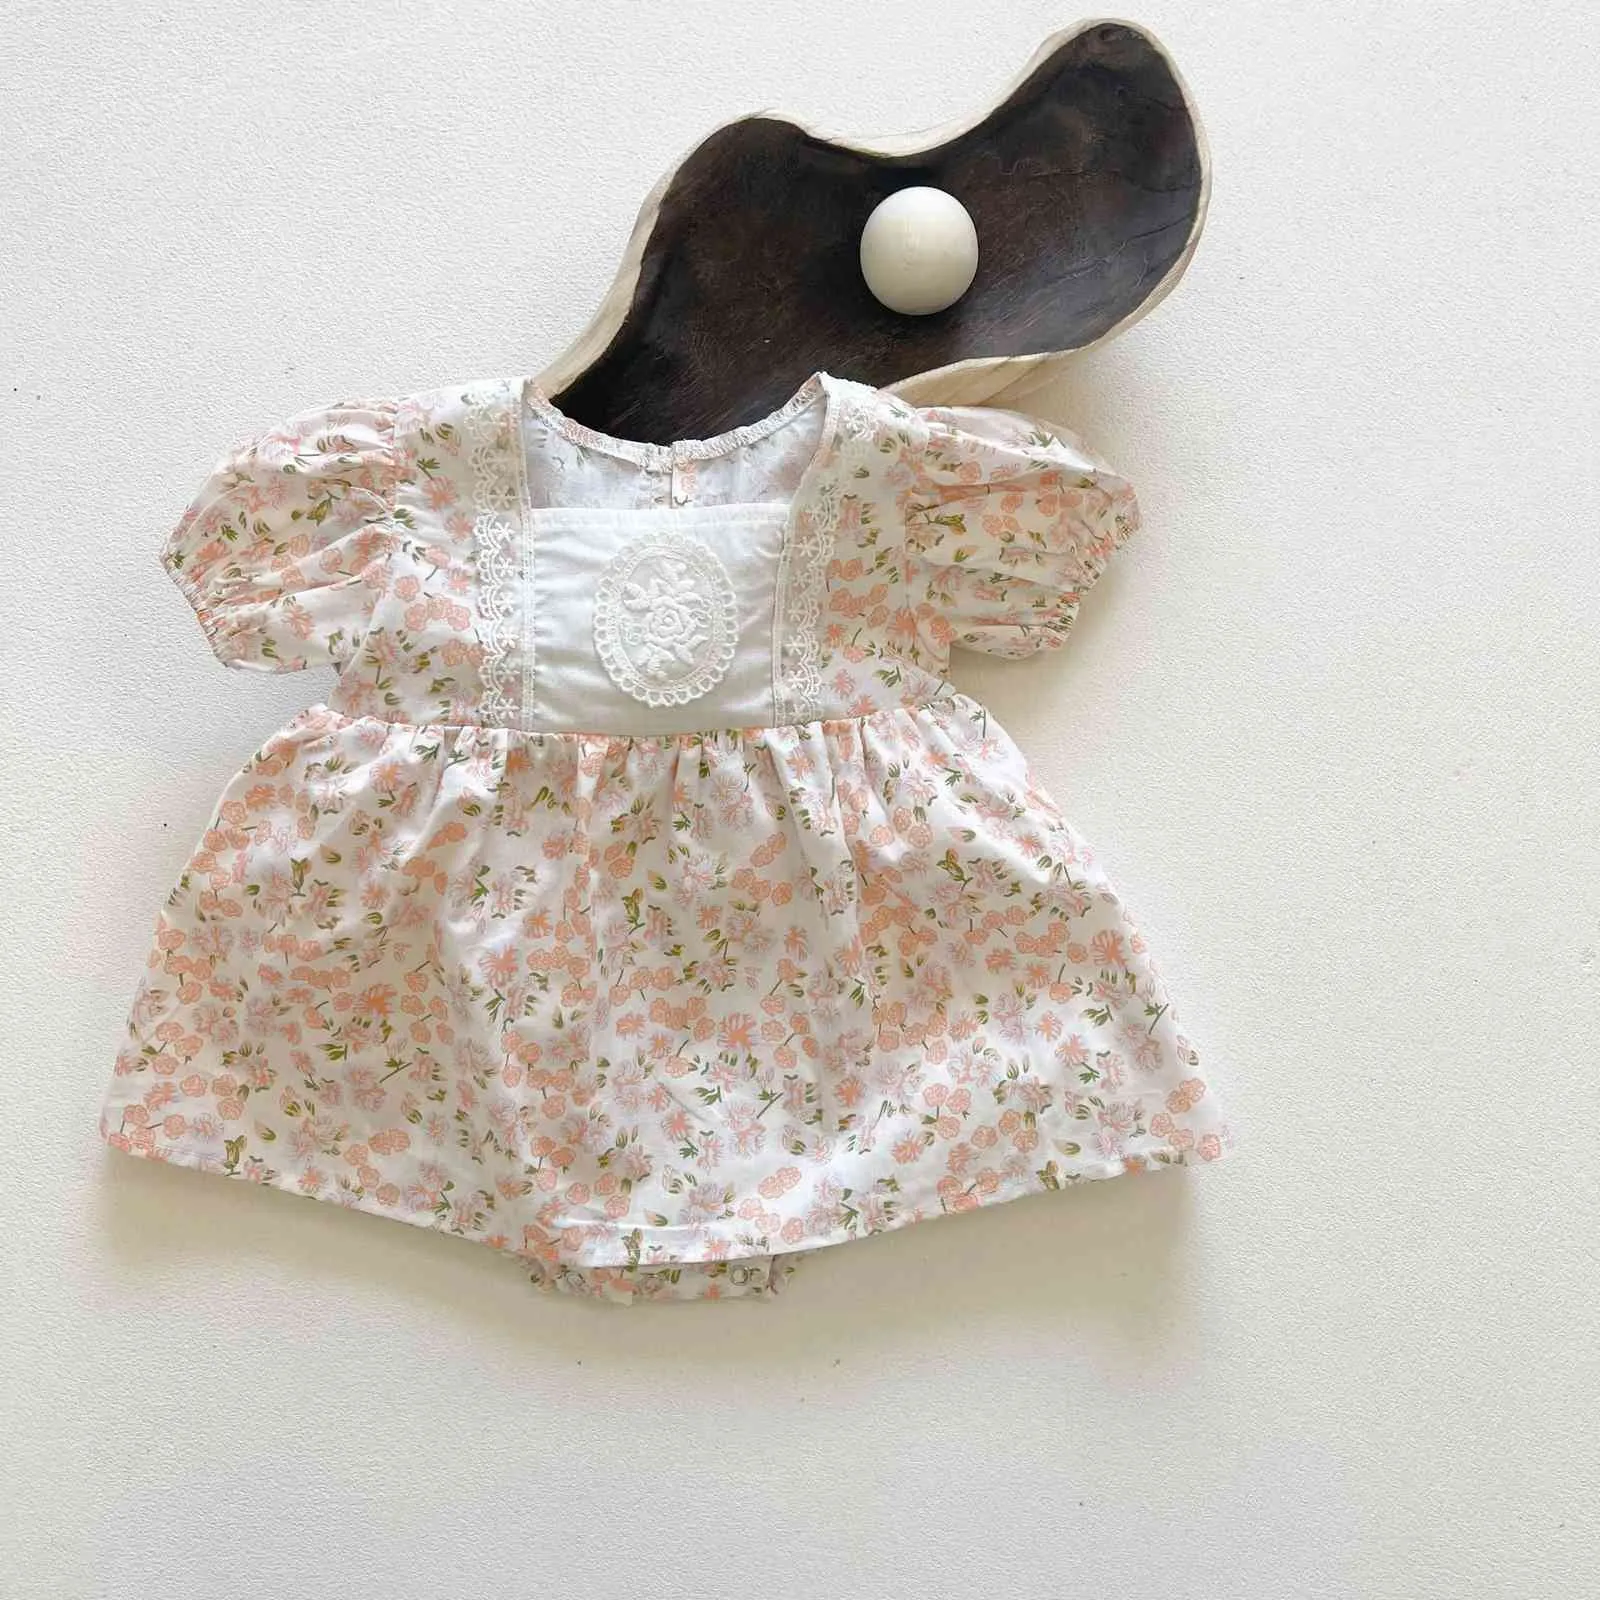 Yaz yeni yürümeye başlayan bebek kız moda çiçek baskılı desen bodysuit çocuk kızlar pamuk kısa kollu prenses bodysuits 210413